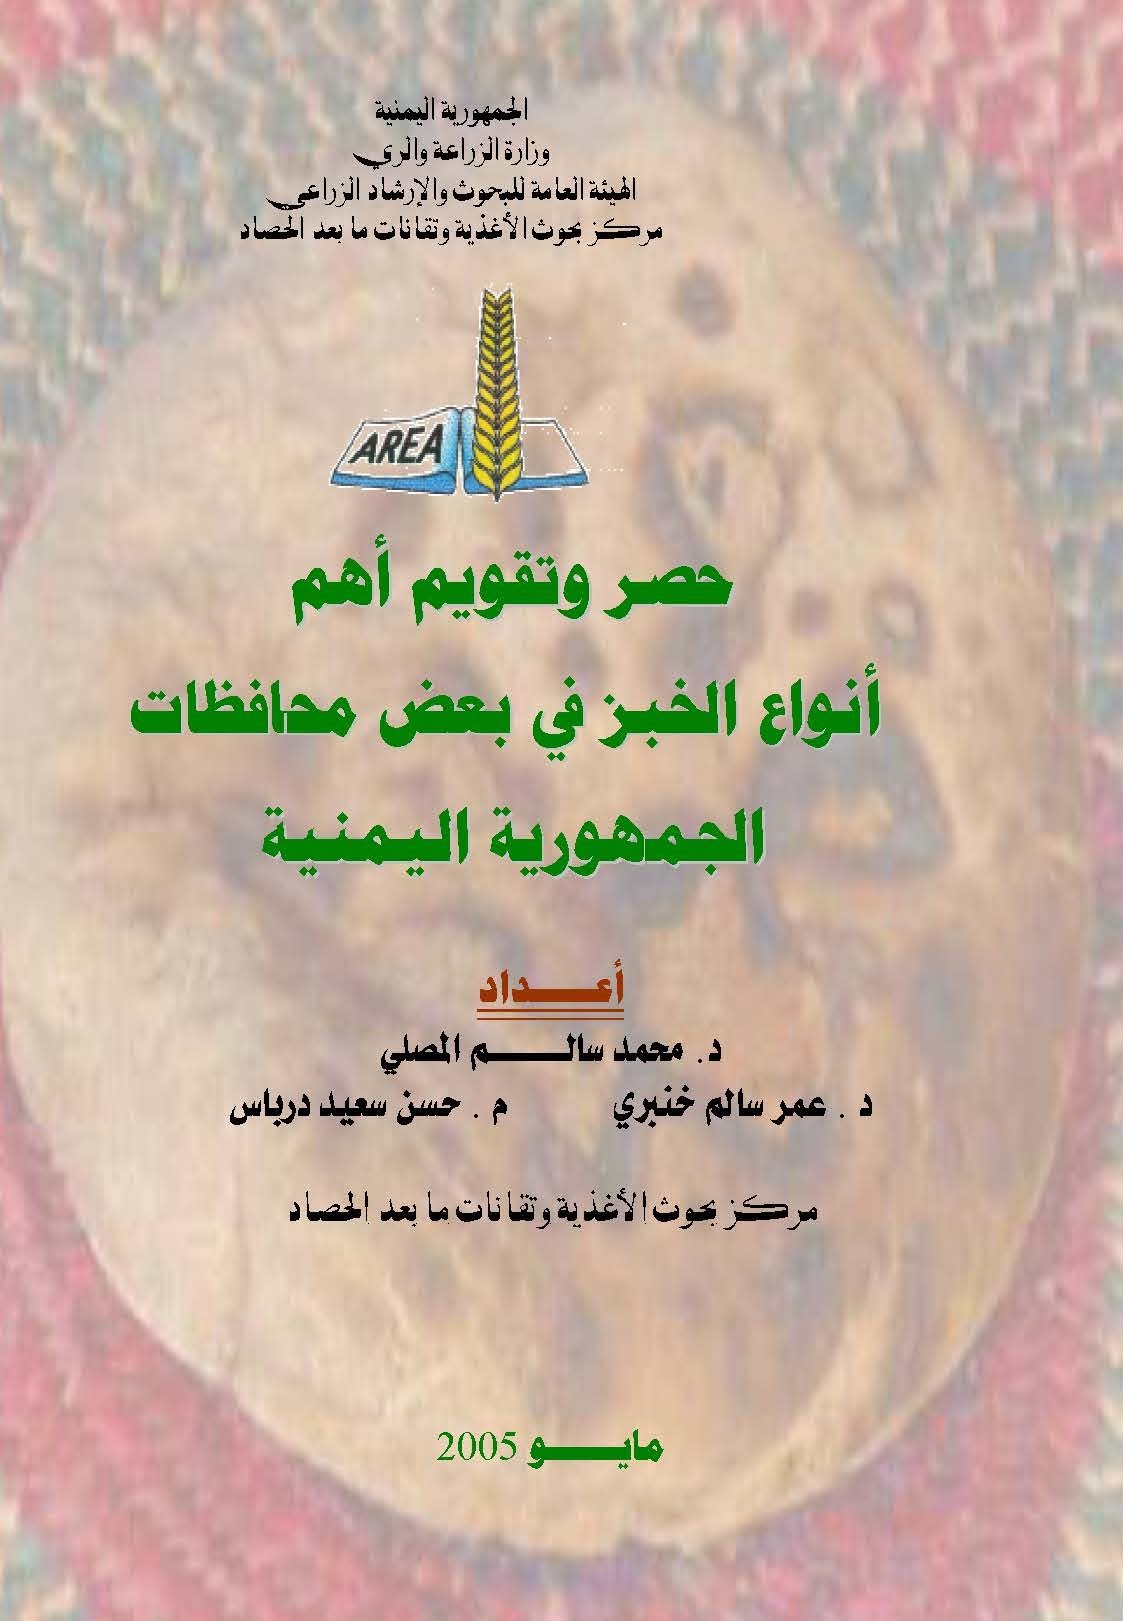 حصر وتقييم اهم انواع الخبز في بعض محافظات الجمهورية اليمنية 2005